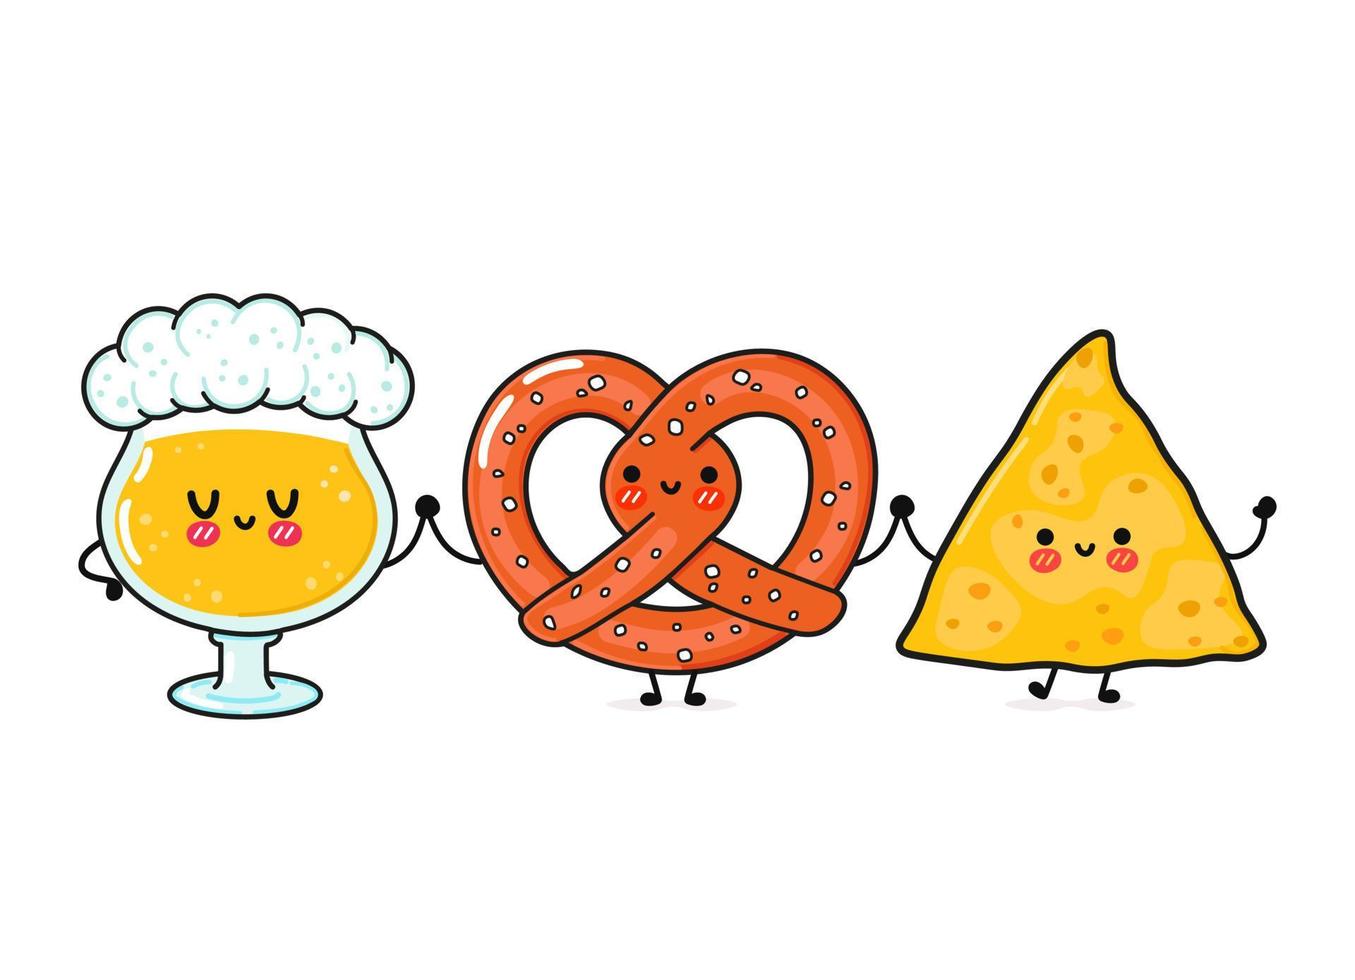 carino, divertente bicchiere di birra, pretzel e nachos. personaggi kawaii del fumetto disegnato a mano di vettore, icona dell'illustrazione. divertente cartone animato bicchiere di birra, pretzel e nachos mascotte amici concetto vettore